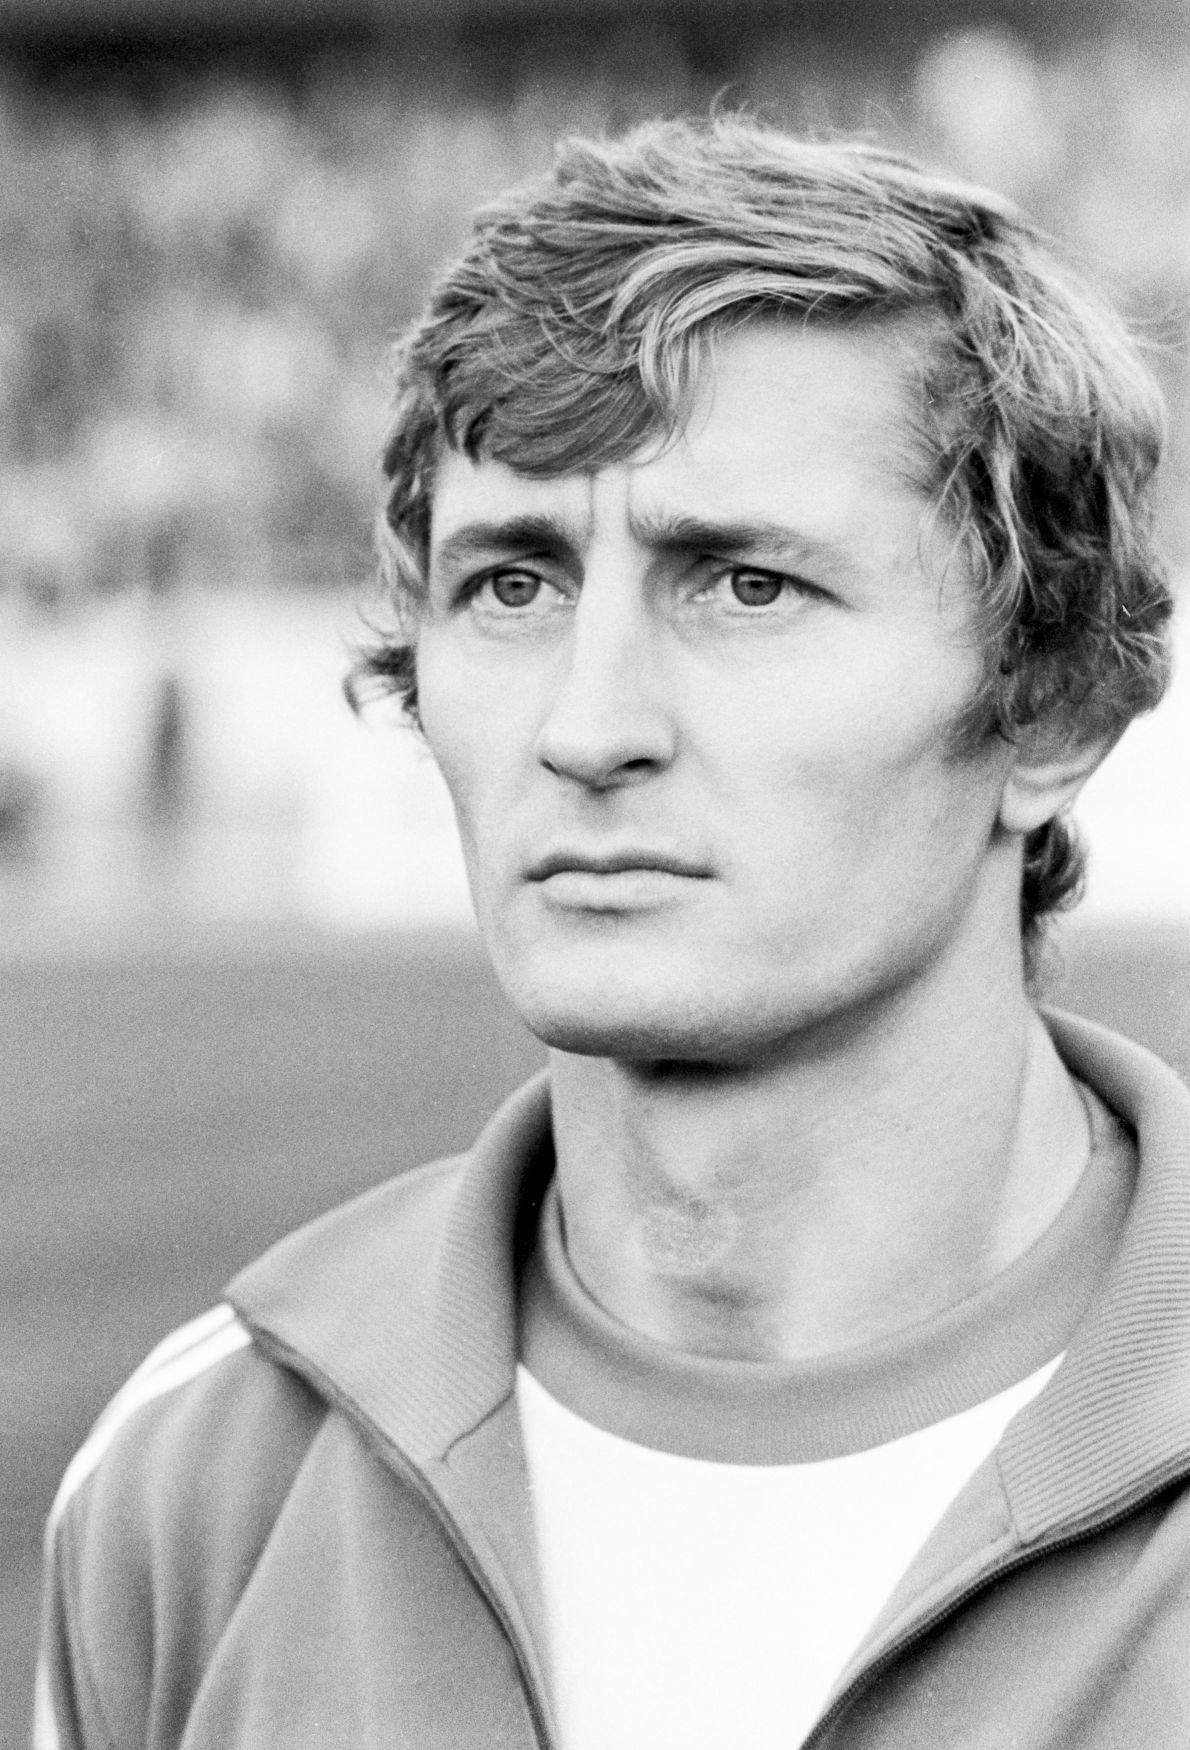 Koloman Gögh, fotbalový mistr z Bělehradu 1976